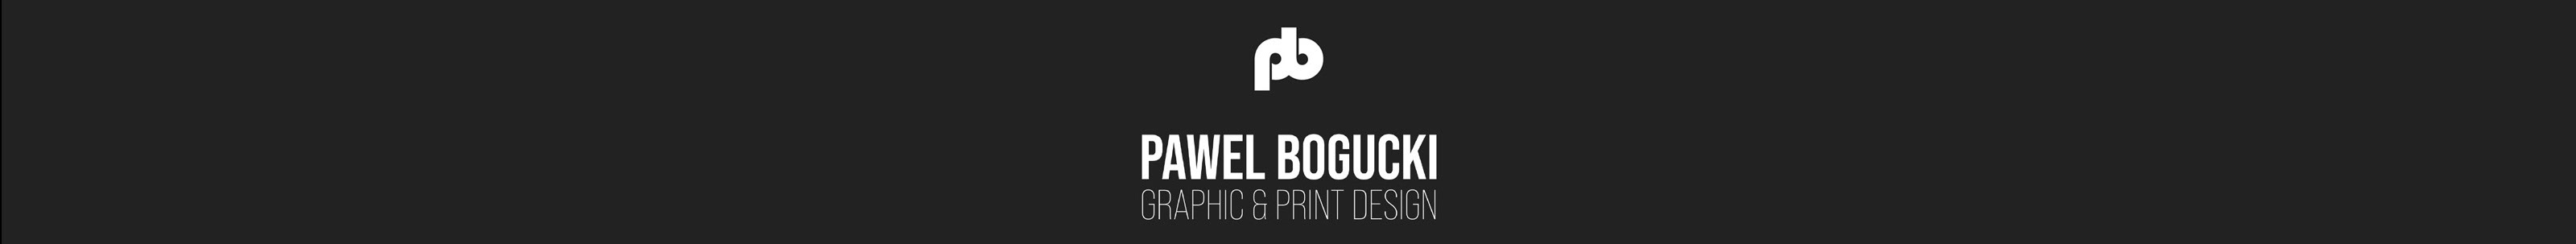 Pawel Bogucki's profile banner